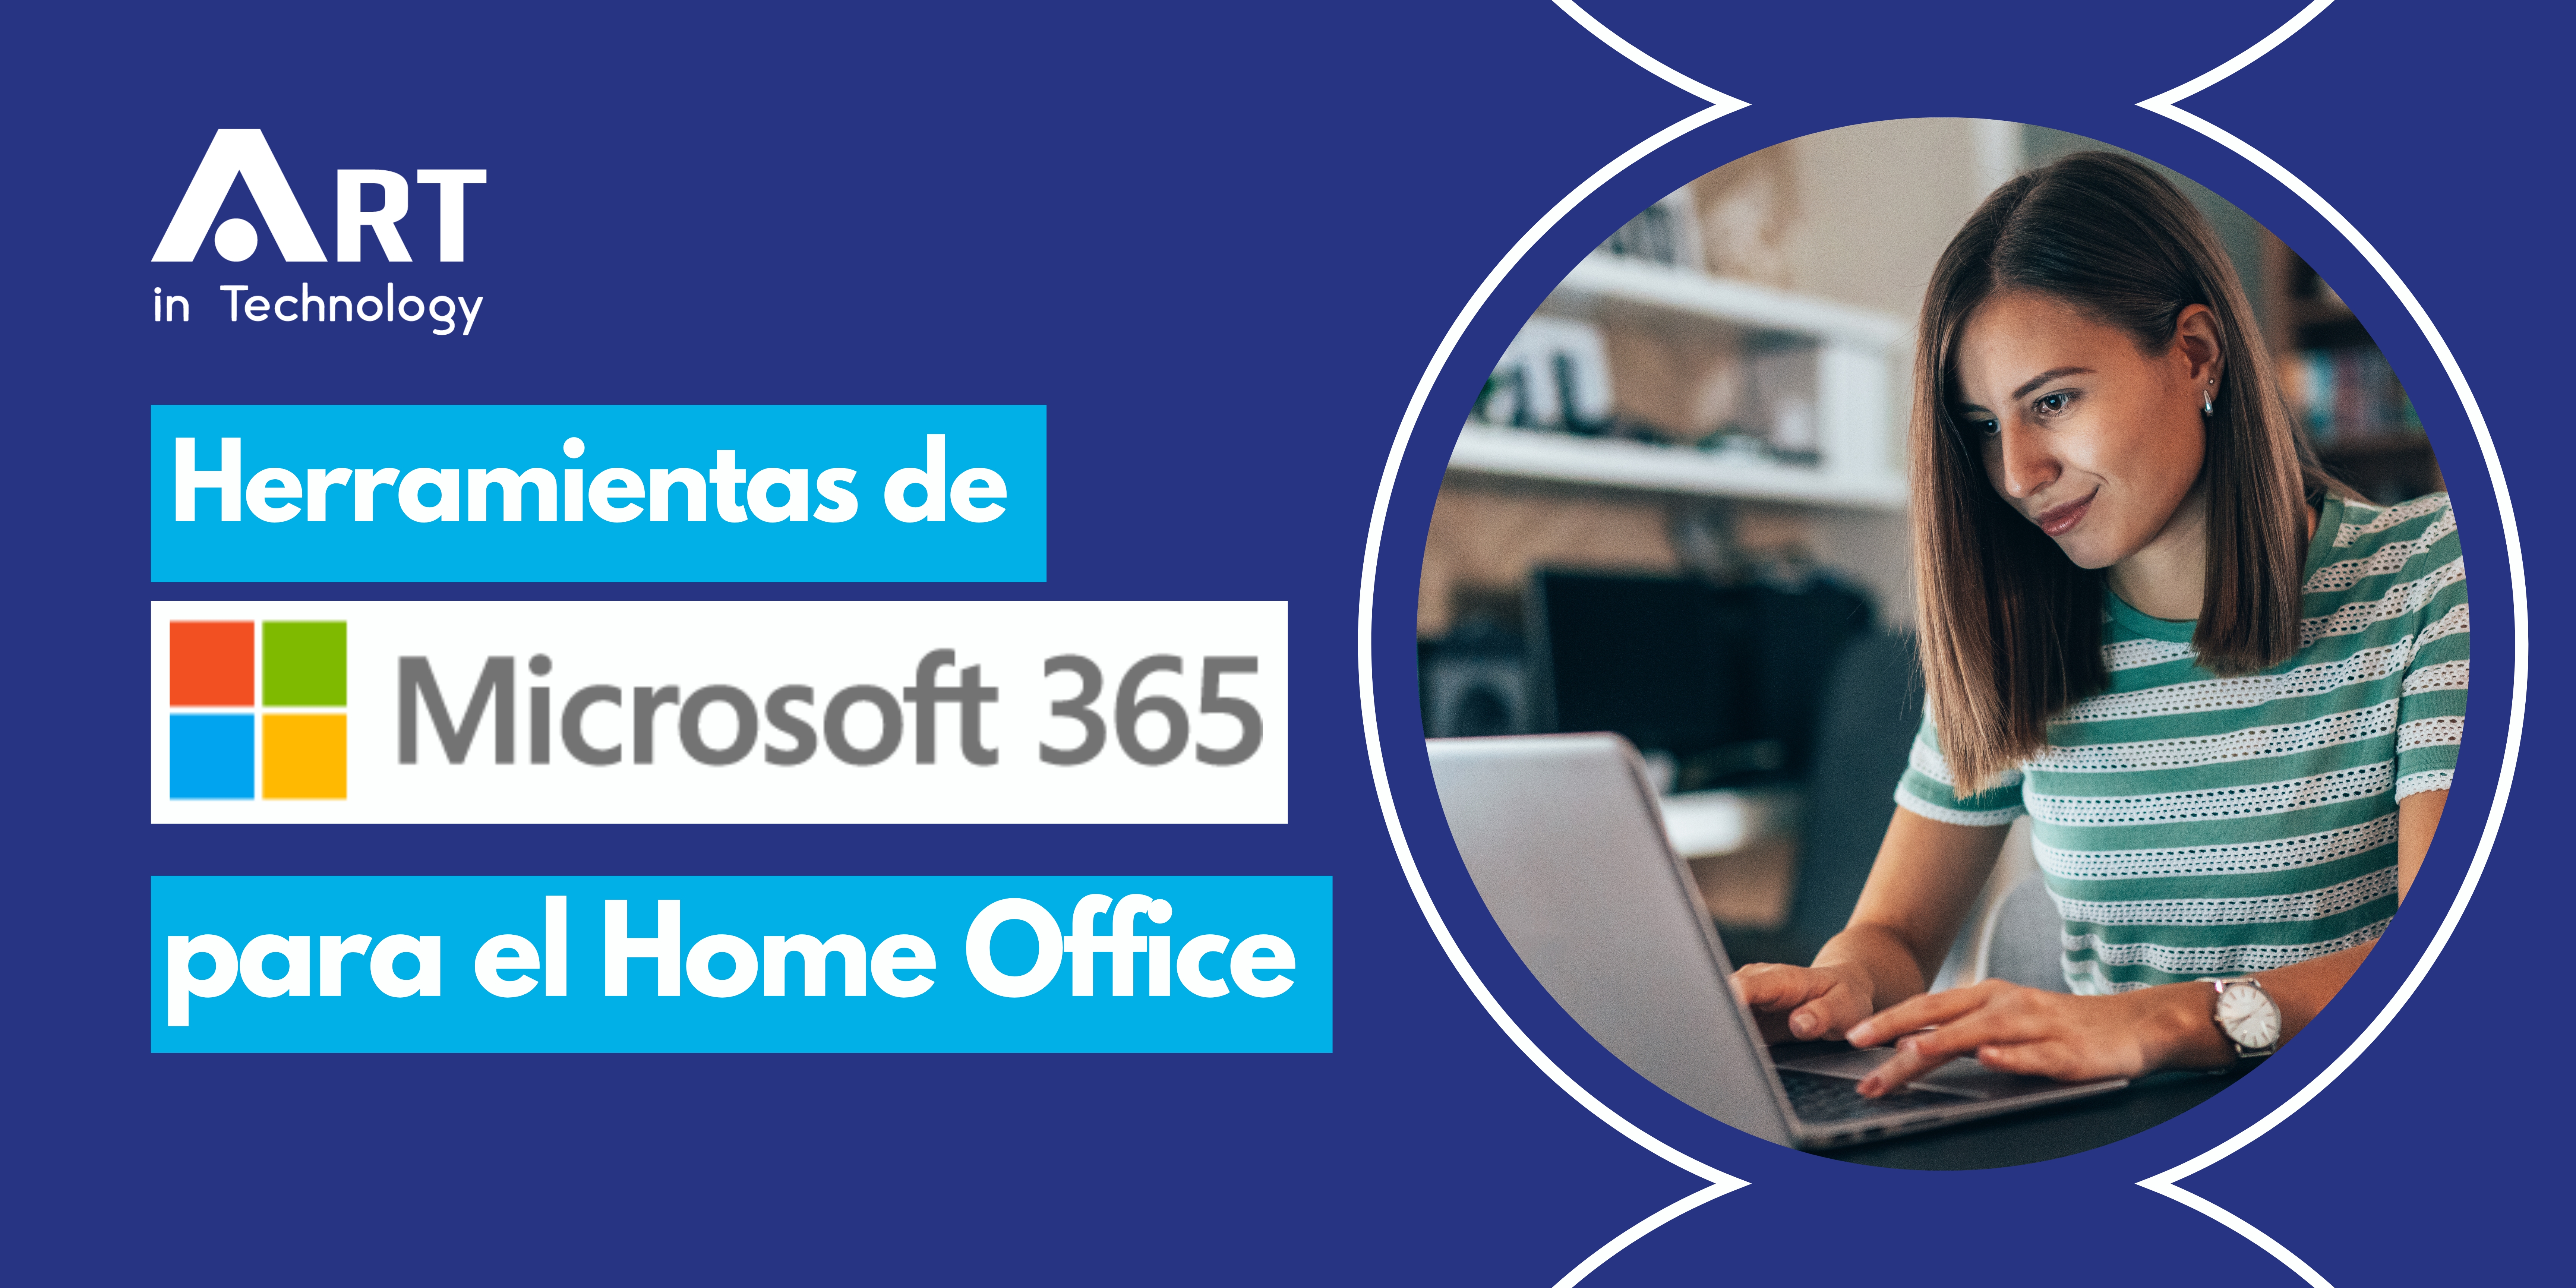 Herramientas de Microsoft 365 para el Home Office | Art in Technology